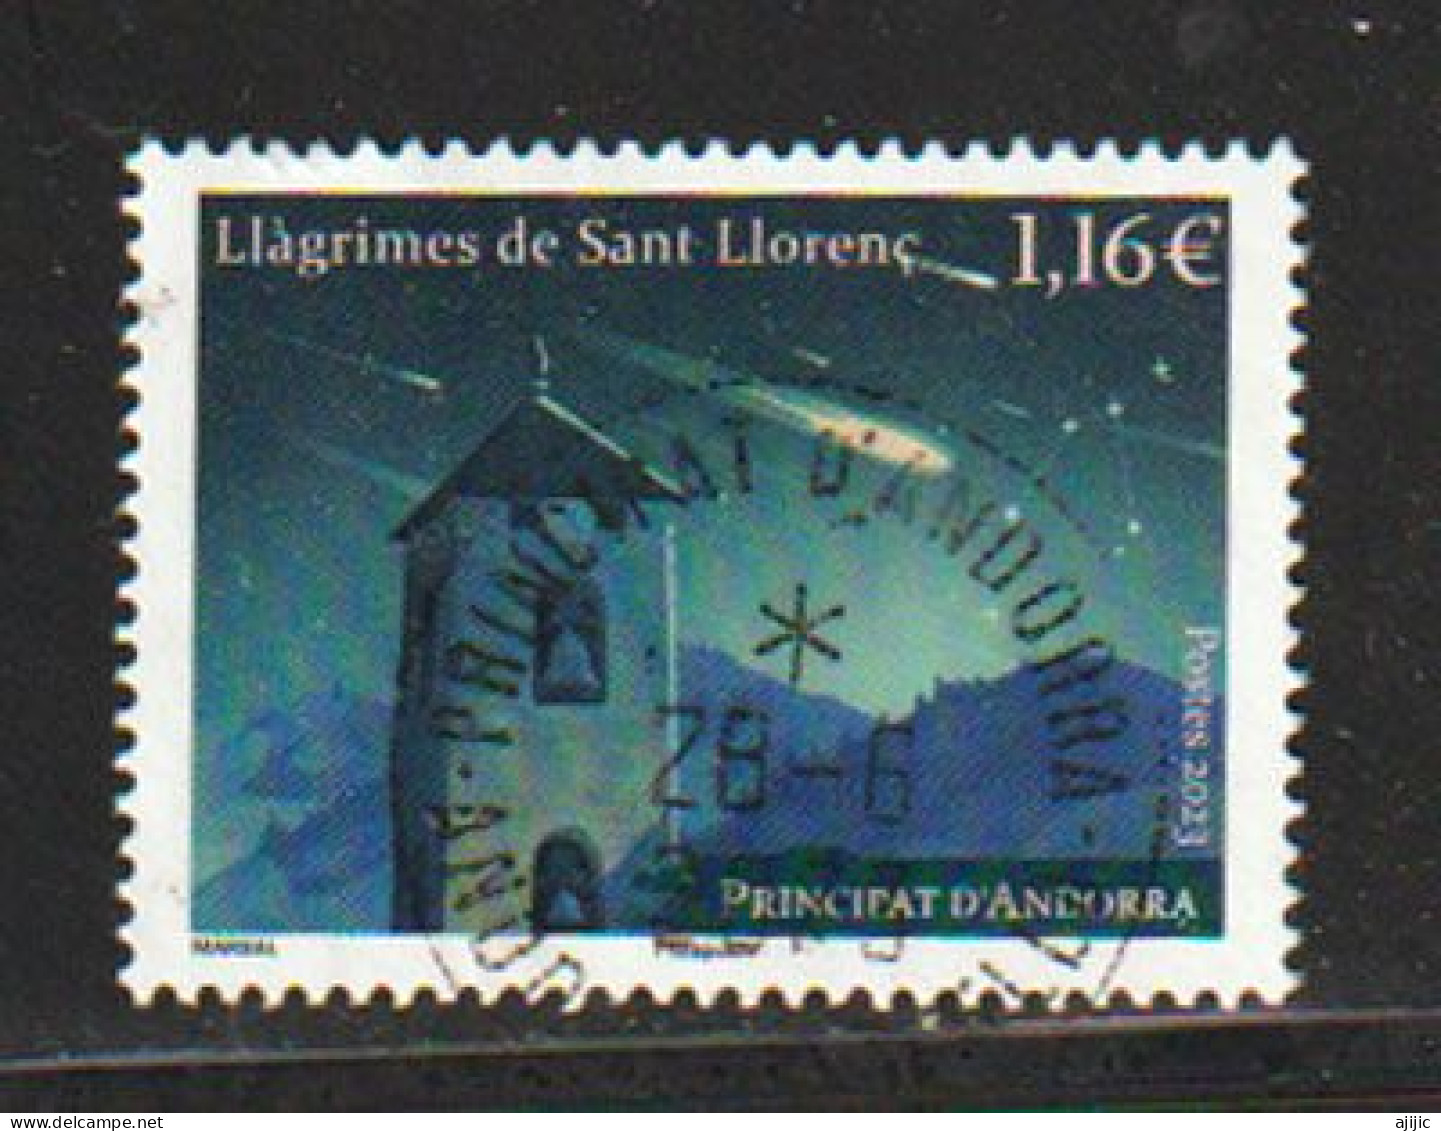 ANDORRA.. Llagrimes De Sant Llorenc (Espectacular Lluvia De Estrellas Nocturna) Perseidas. Sello Cancelado 1ª Calidad - Gebruikt